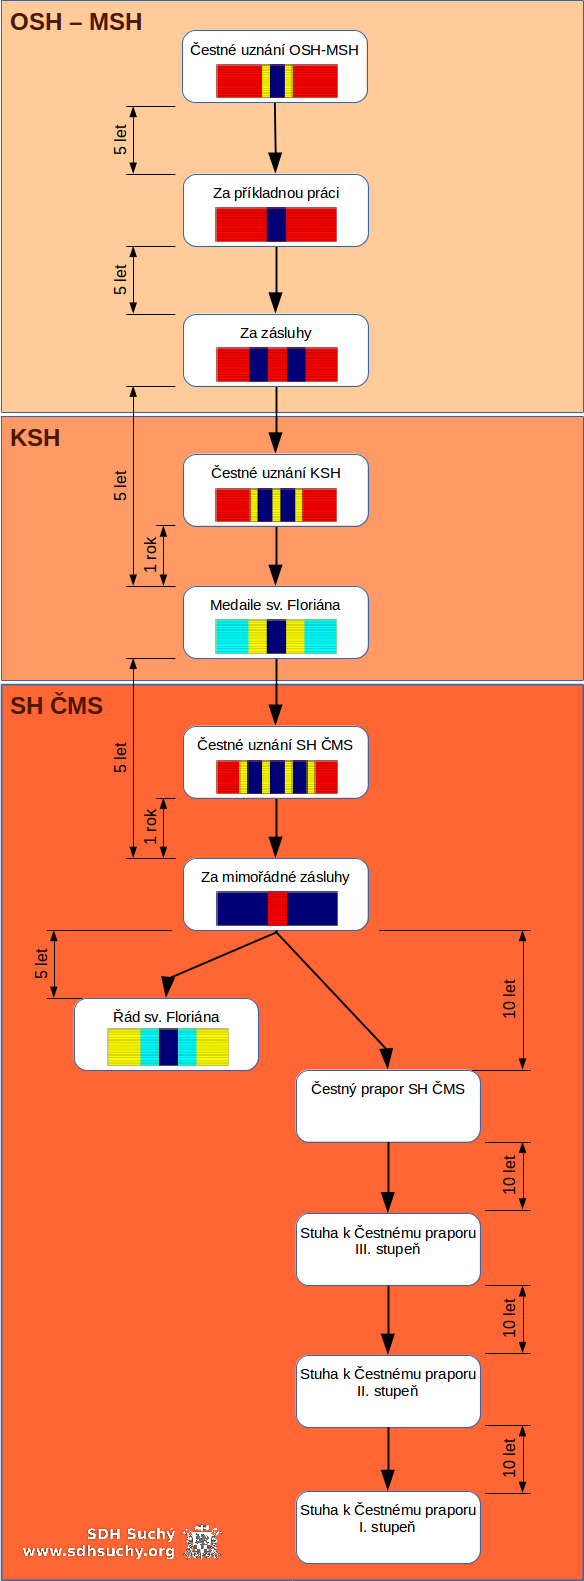 Plakát SH ČMS  diagram udělení ocenění